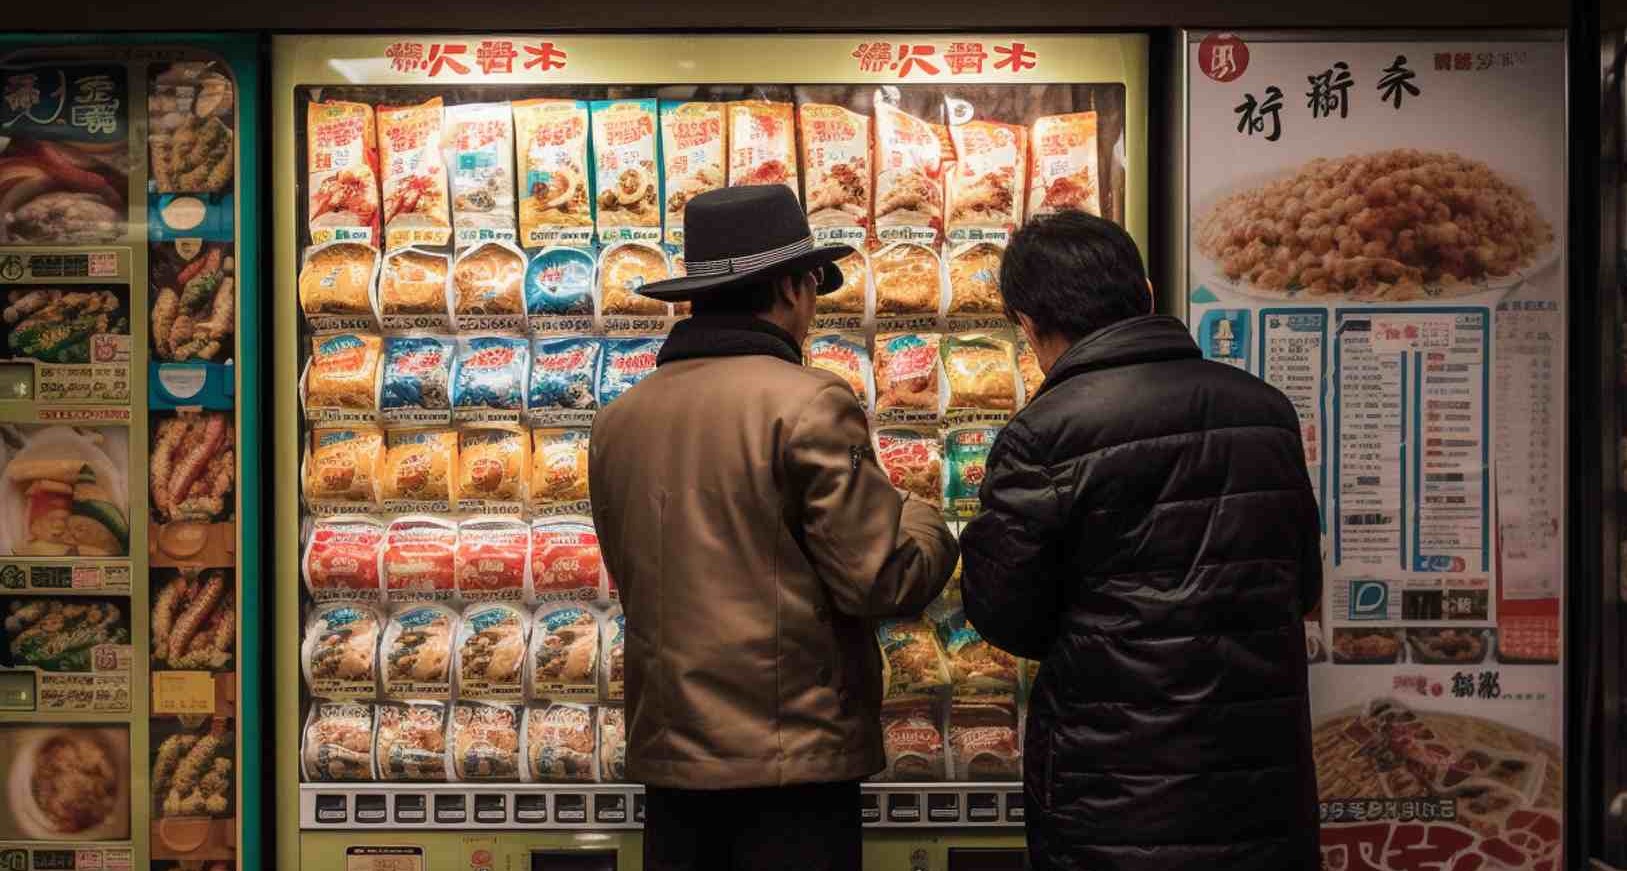 La industria de las máquinas expendedoras en Japón mengua, pero se adapta y mantiene la innovación